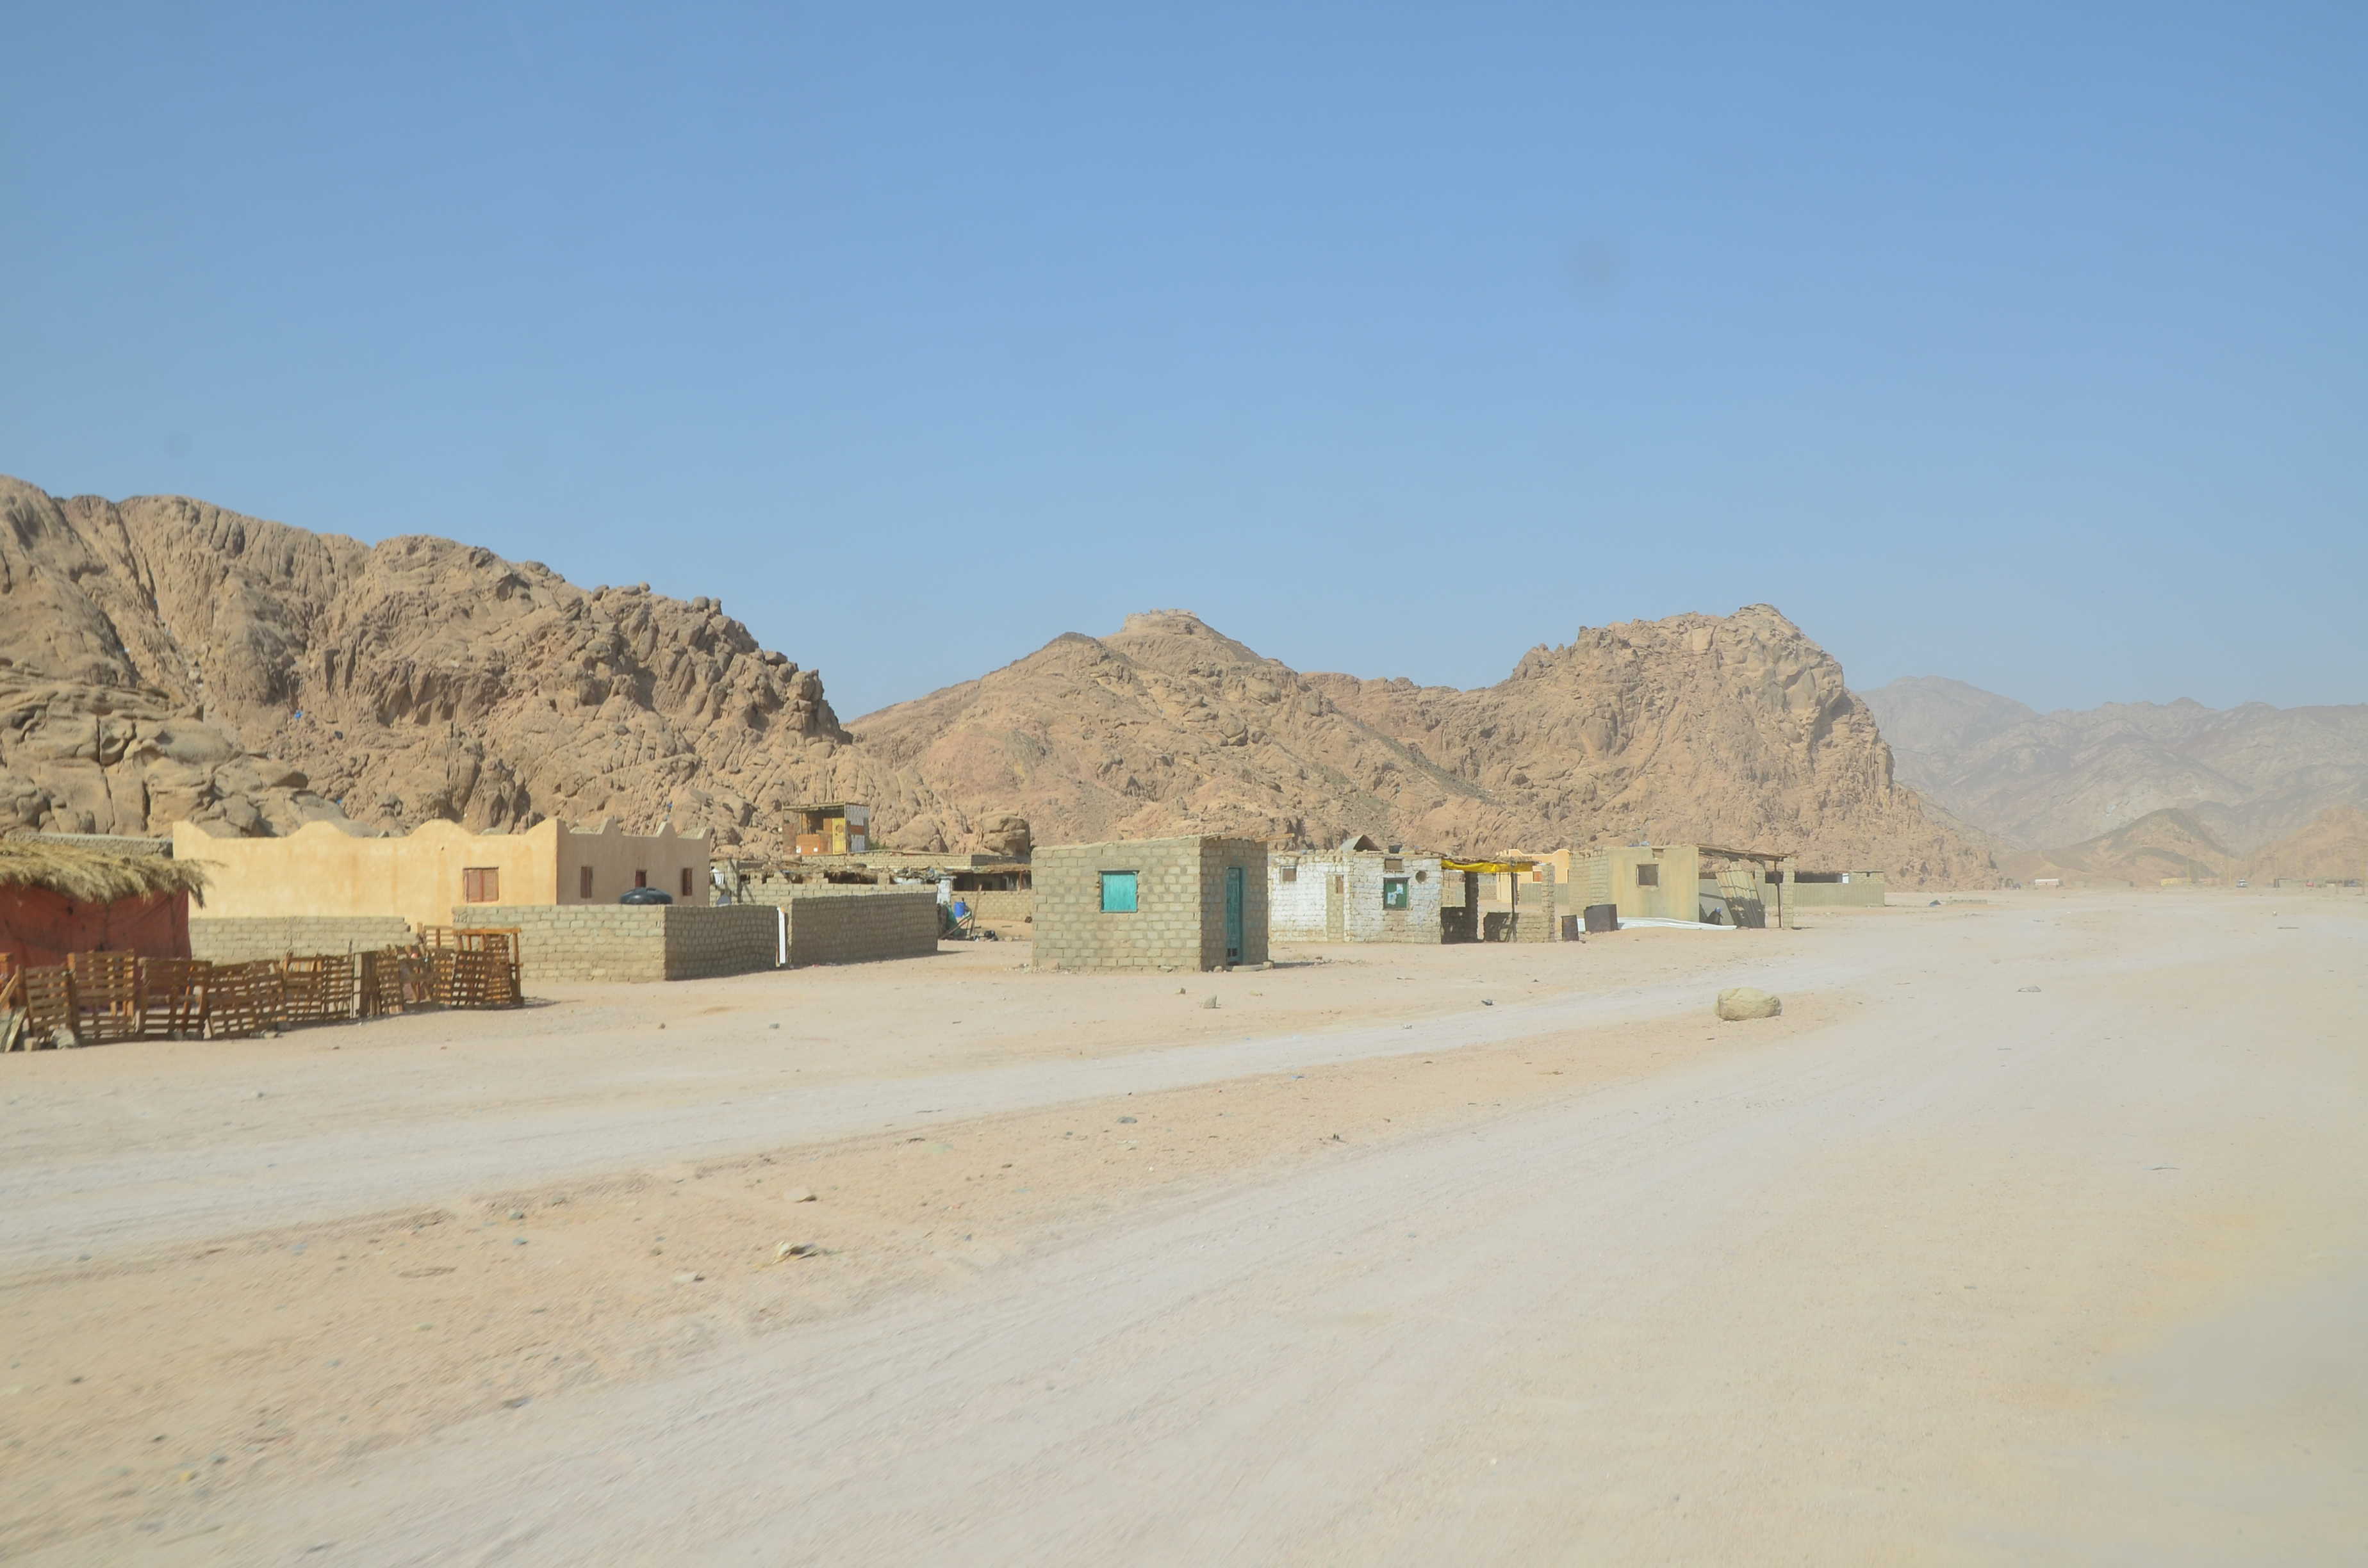 Bedouin settlement in Sinai, Egypt